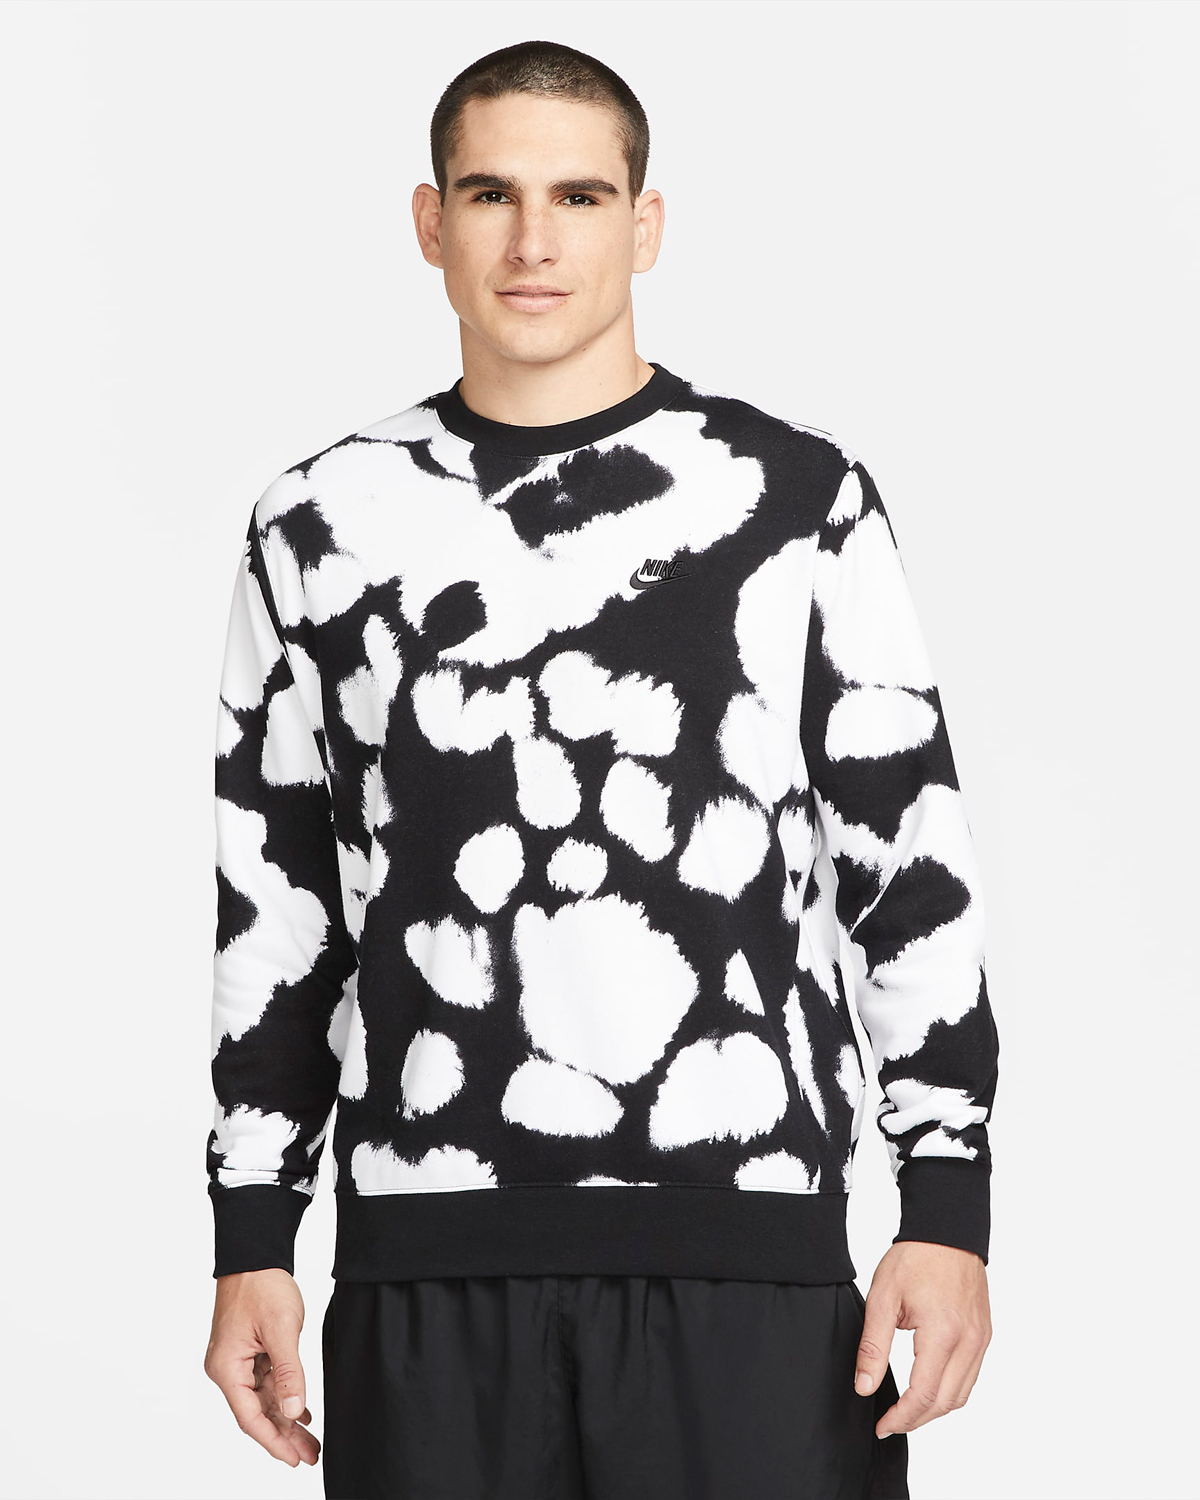 nike-dunk-panda-black-white-sweatshirt